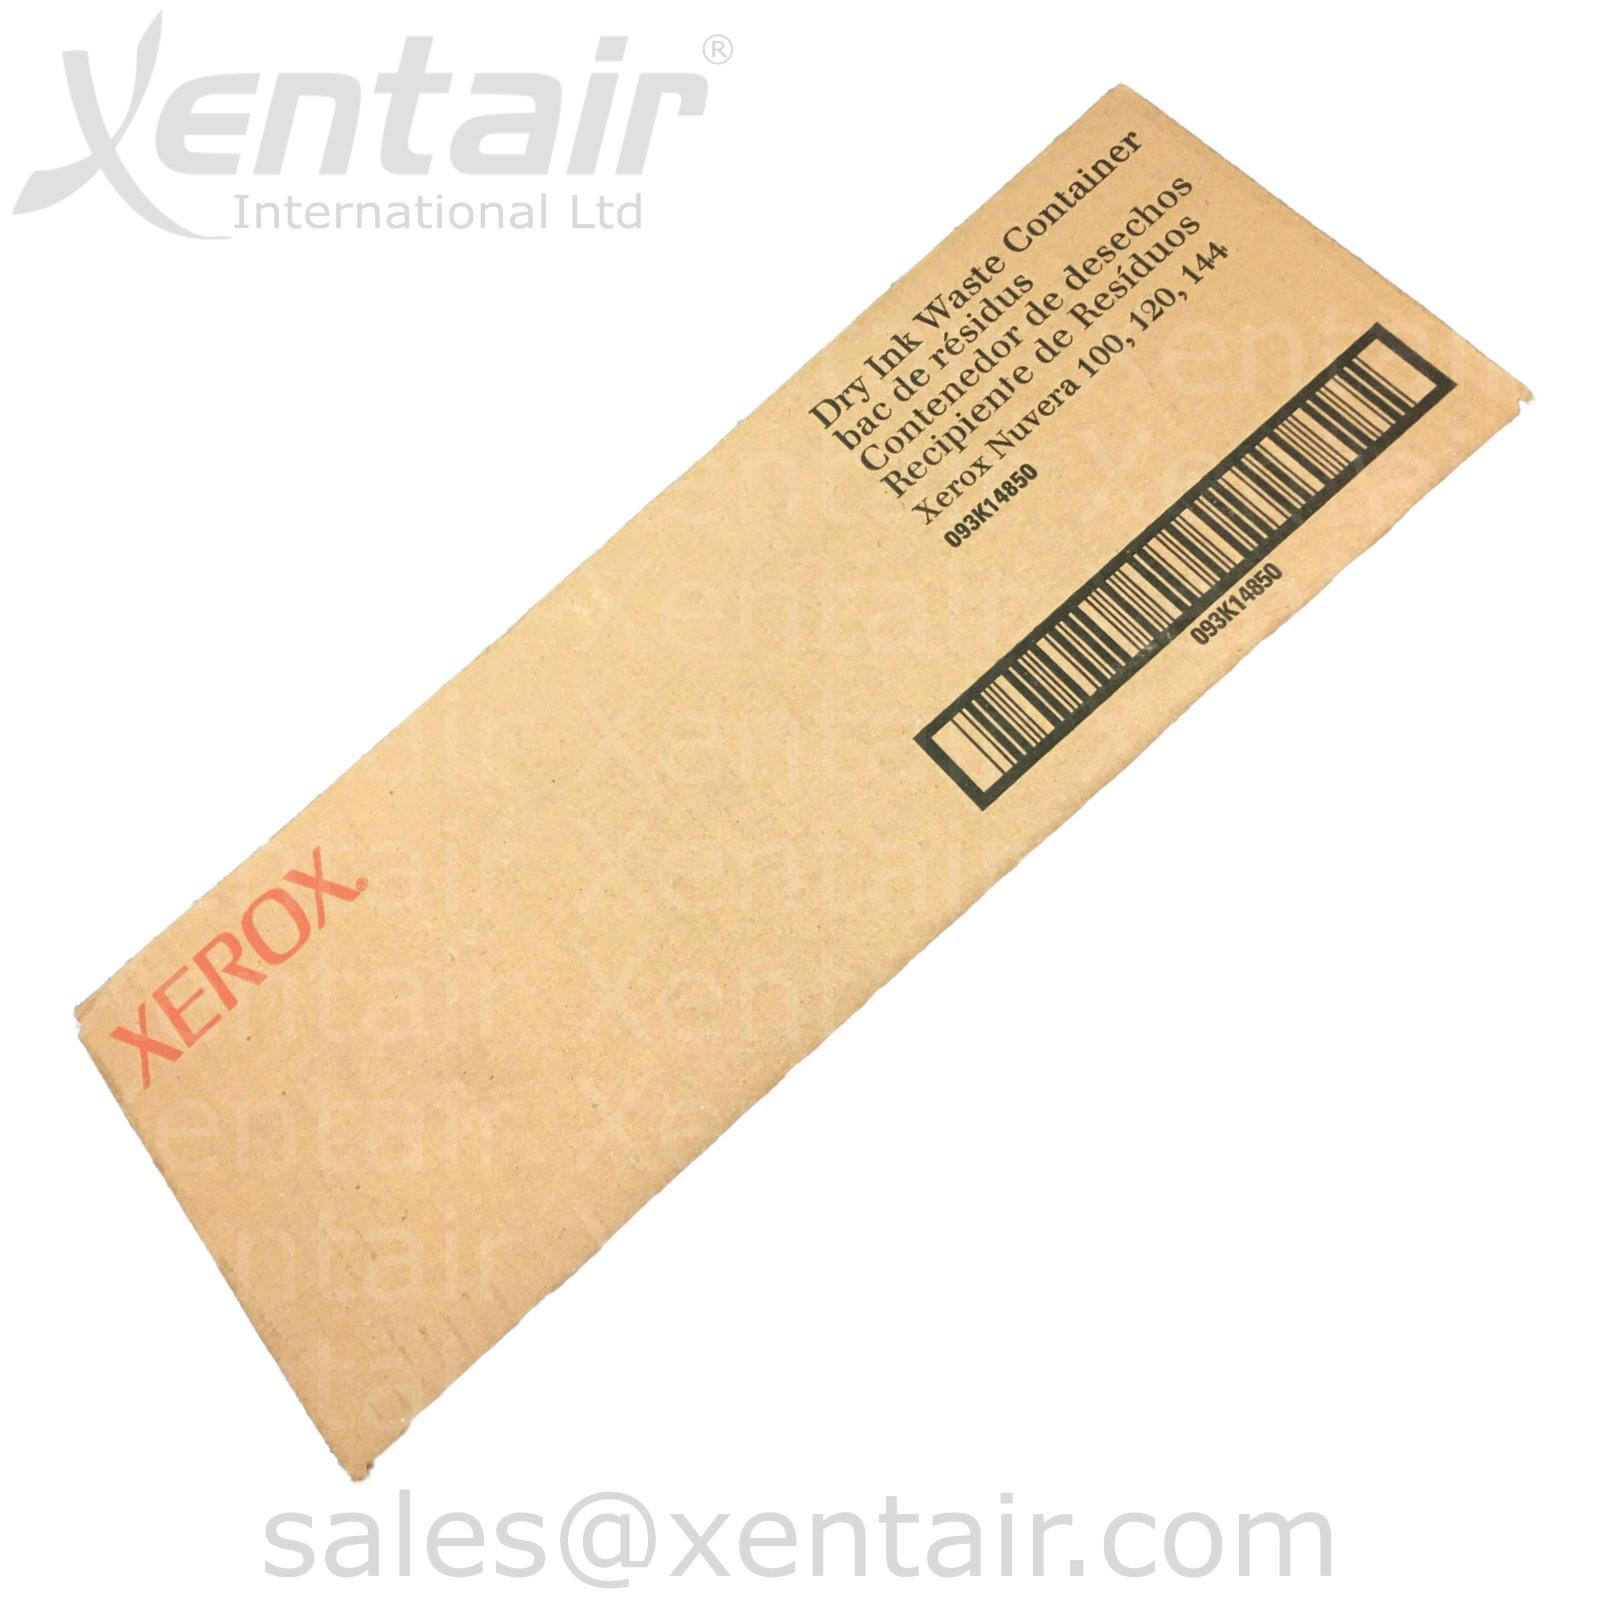 Waste toner box Original Xerox 1x No Color 008R12990 for Xerox DocuColor 240